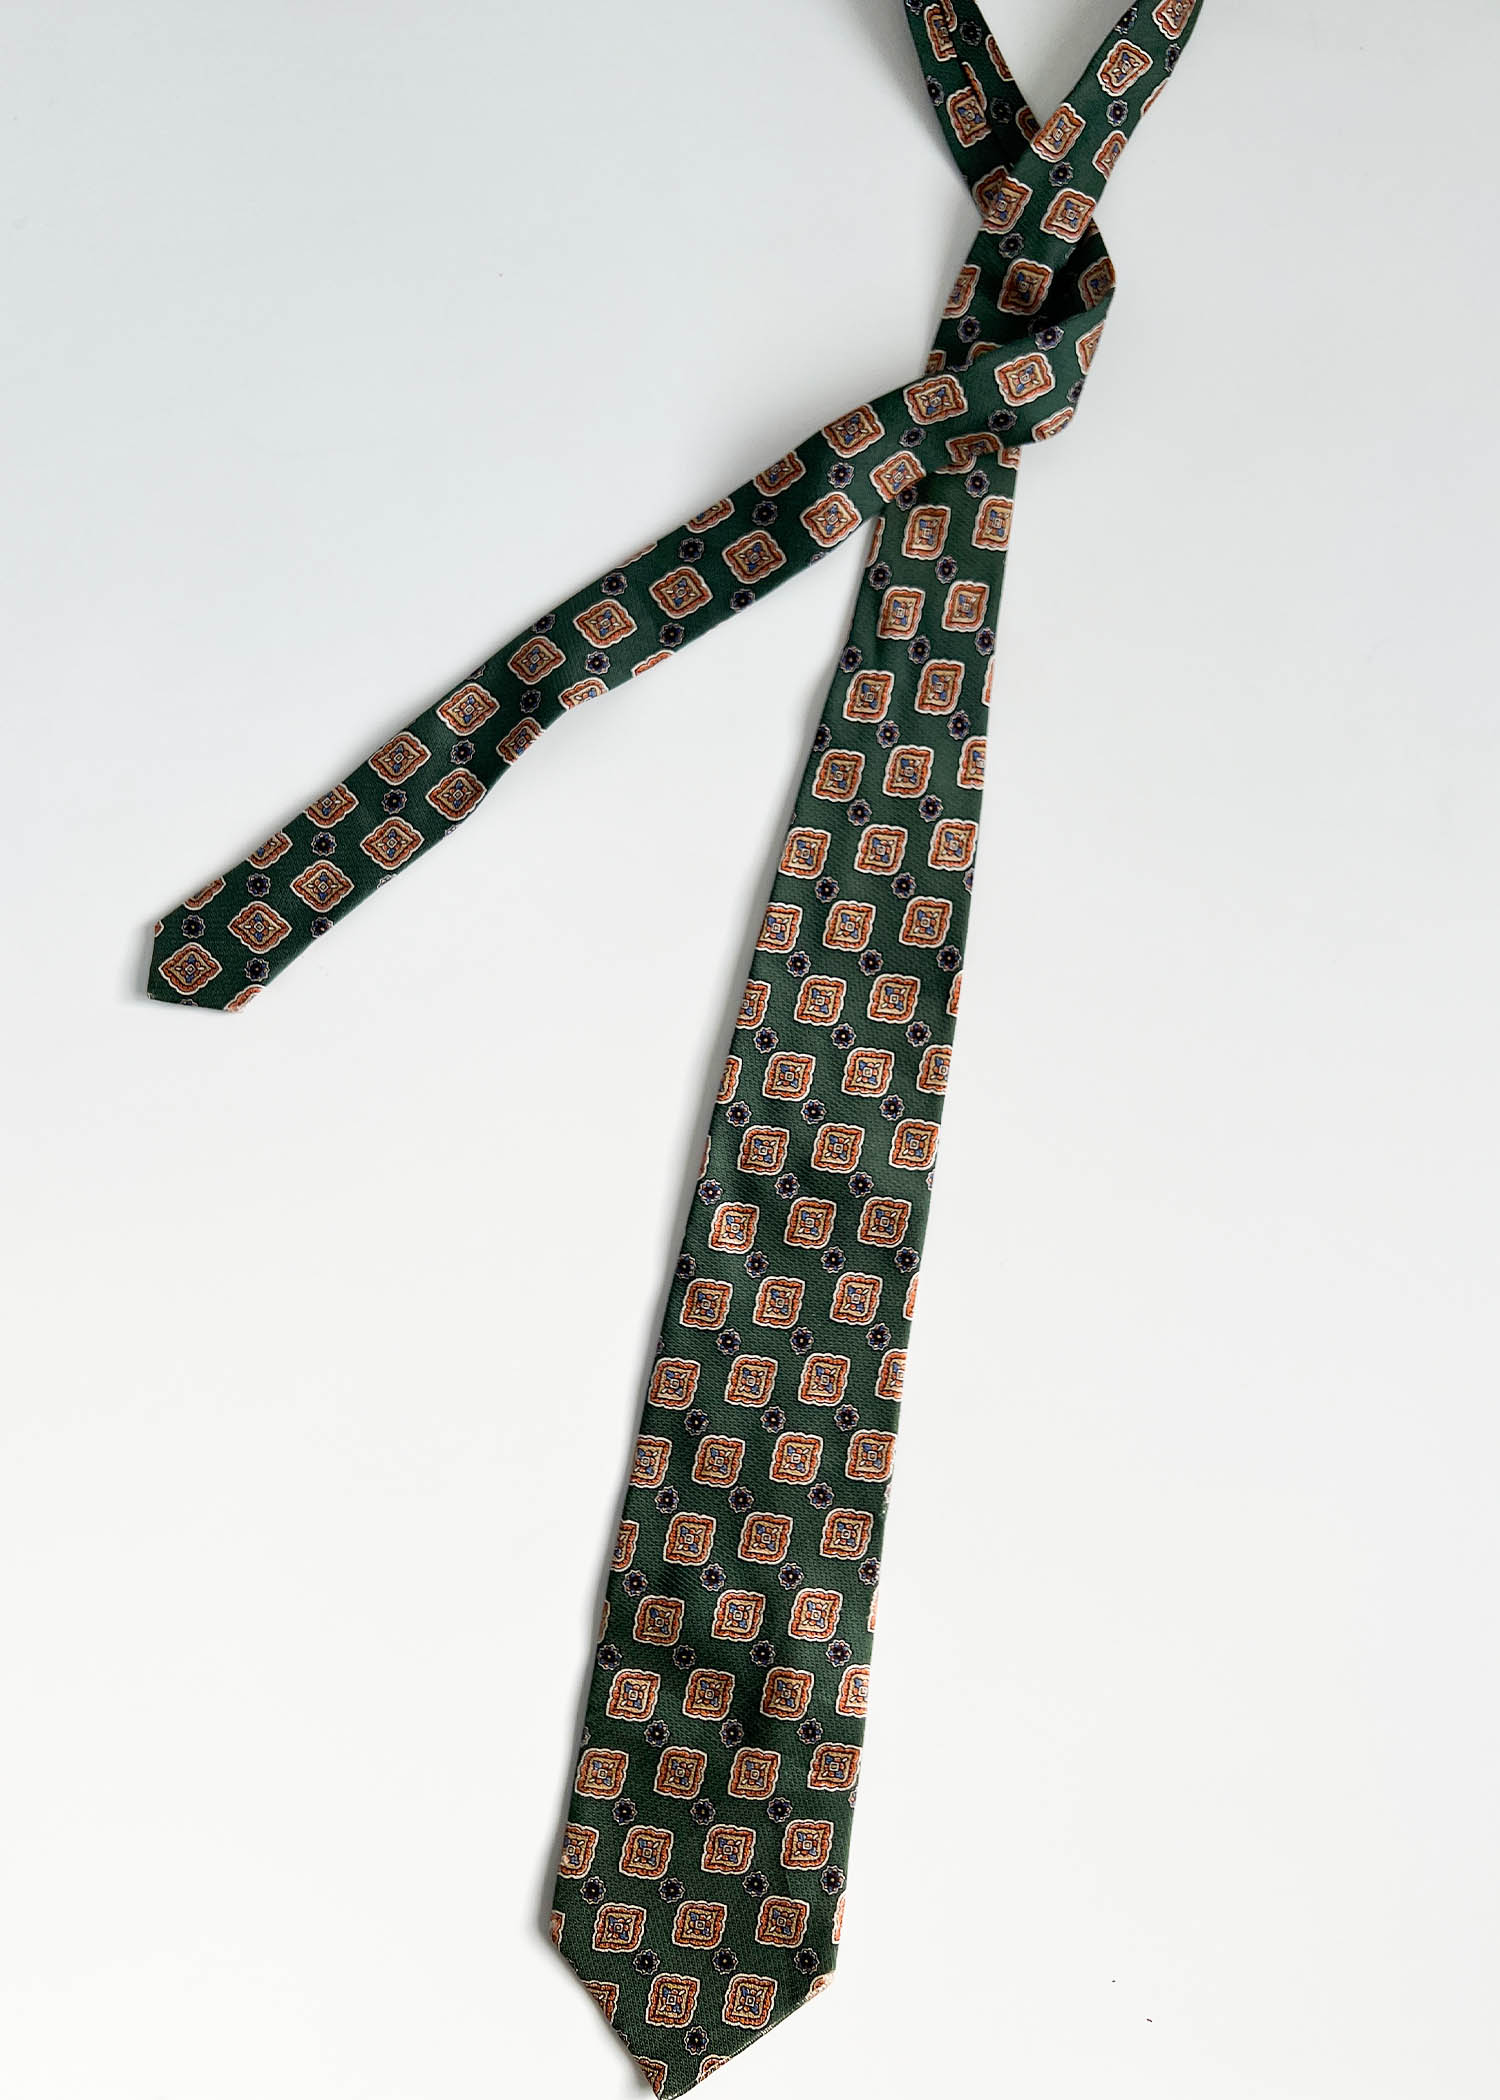 Chrisitan Dior pattern tie